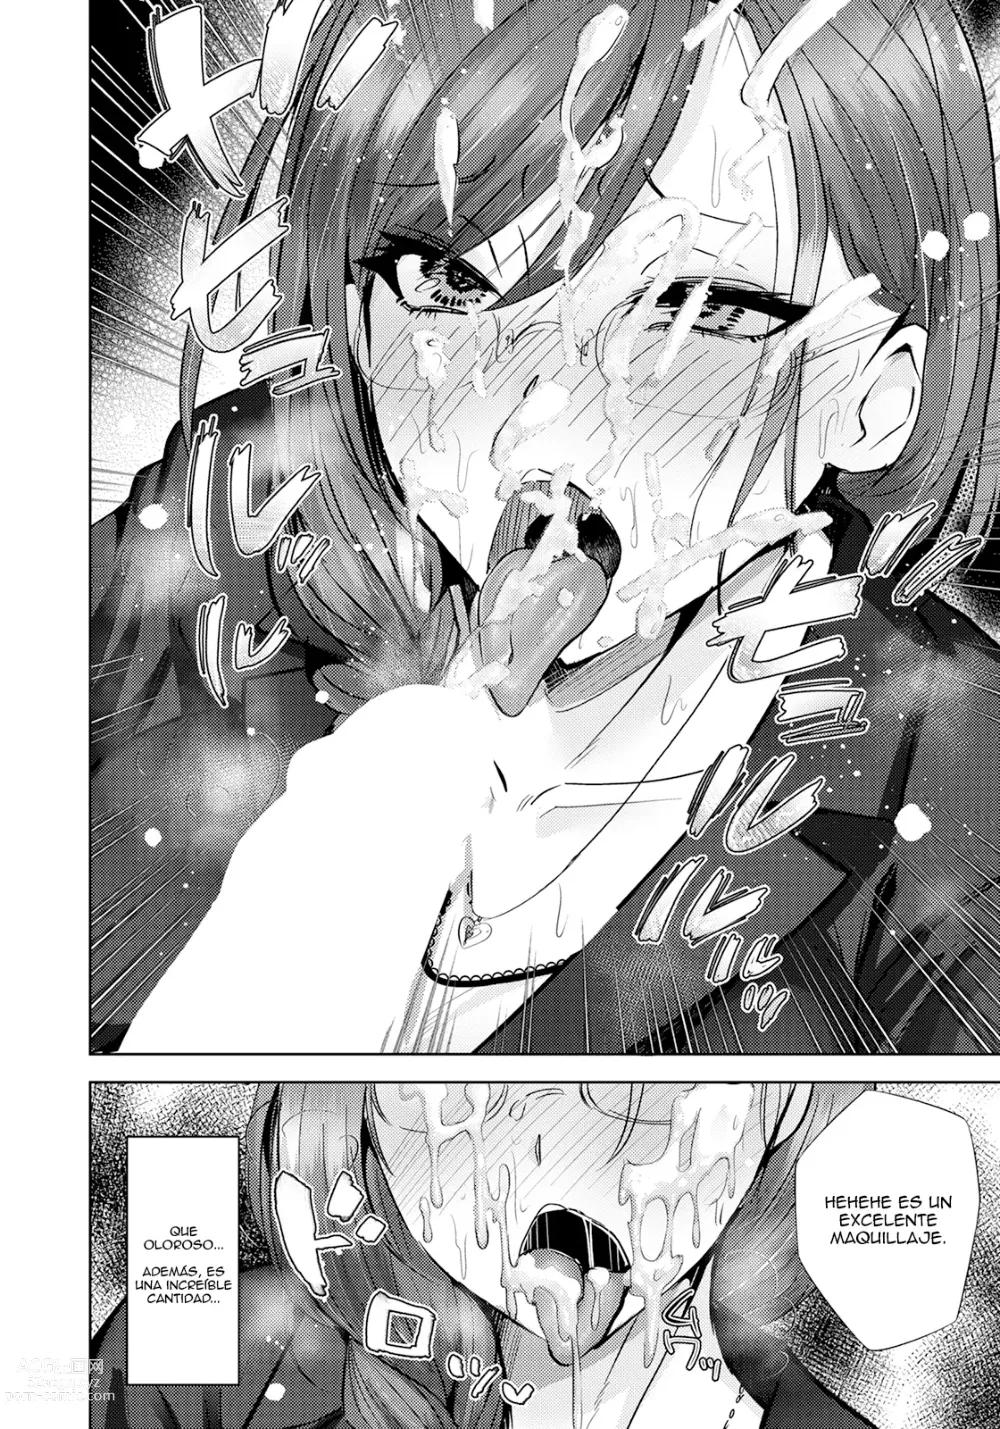 Page 6 of manga Inkou Revival